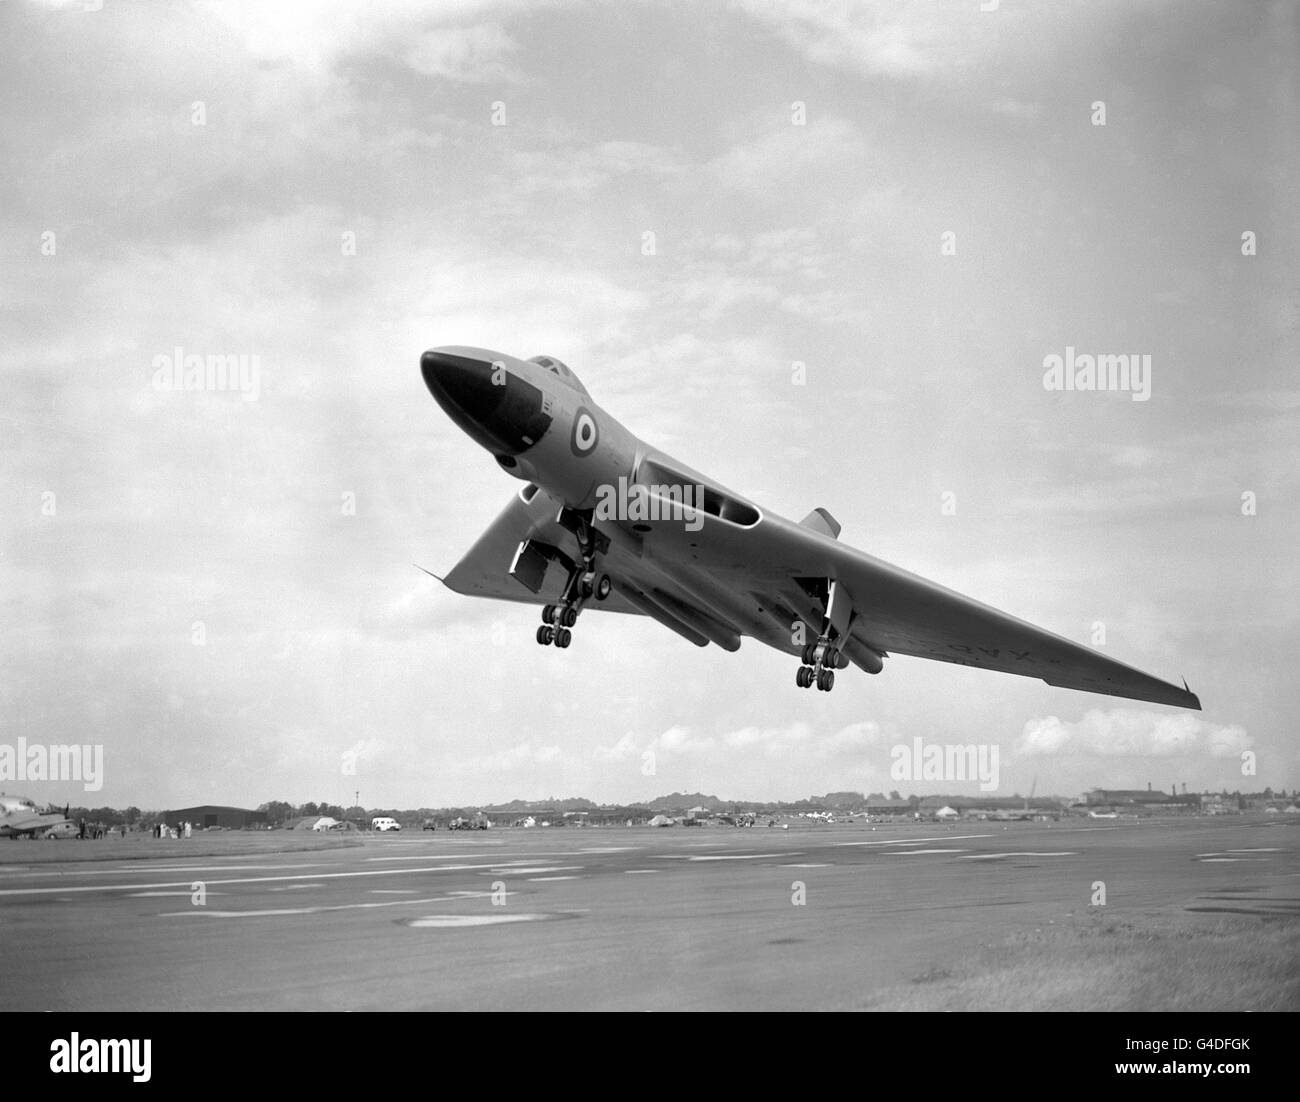 Aviation - Farnborough Airshow - Farnborough Airfield Stock Photo